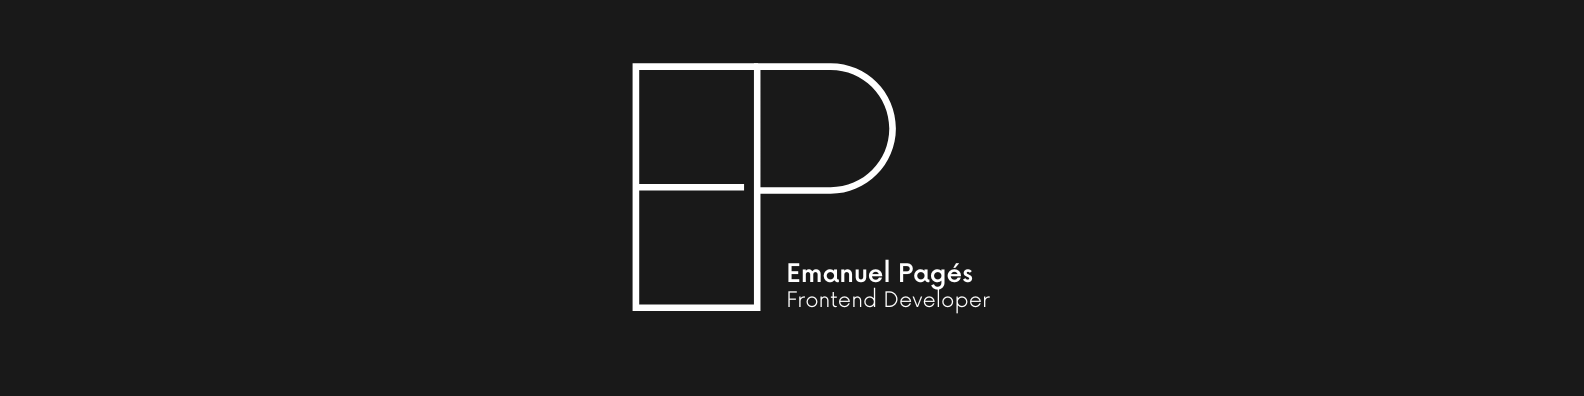 Emanuel Pages Frontend Developer